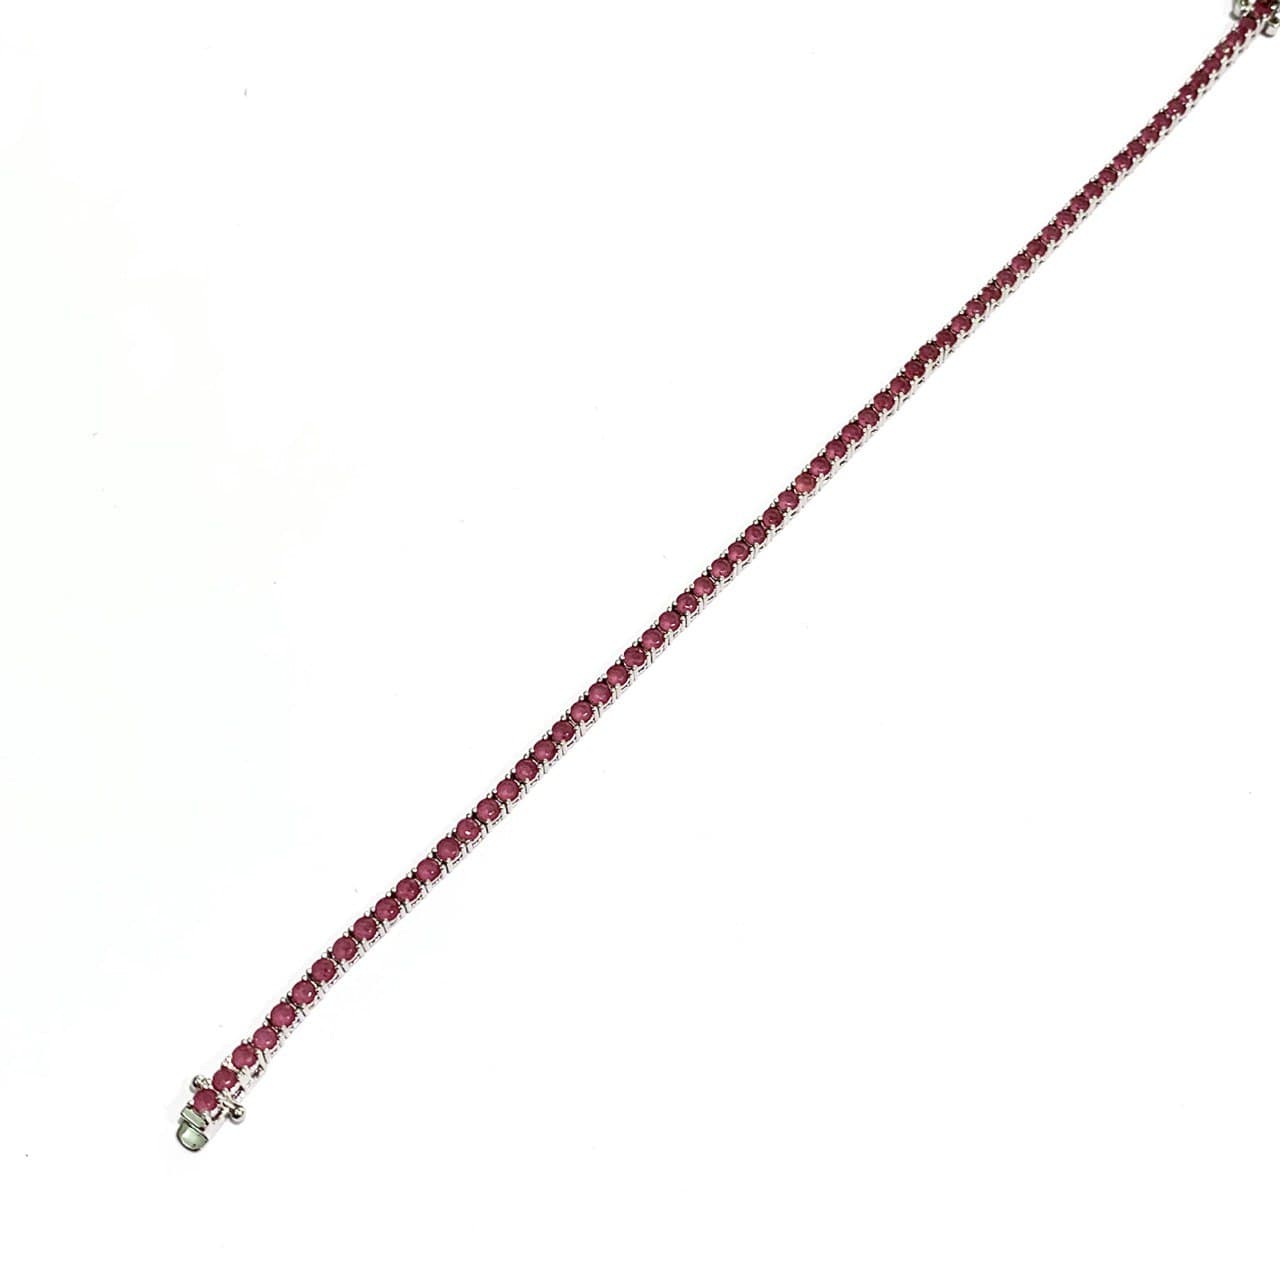 Bracciale argento tennis con zirconi colore rubino/smeraldo